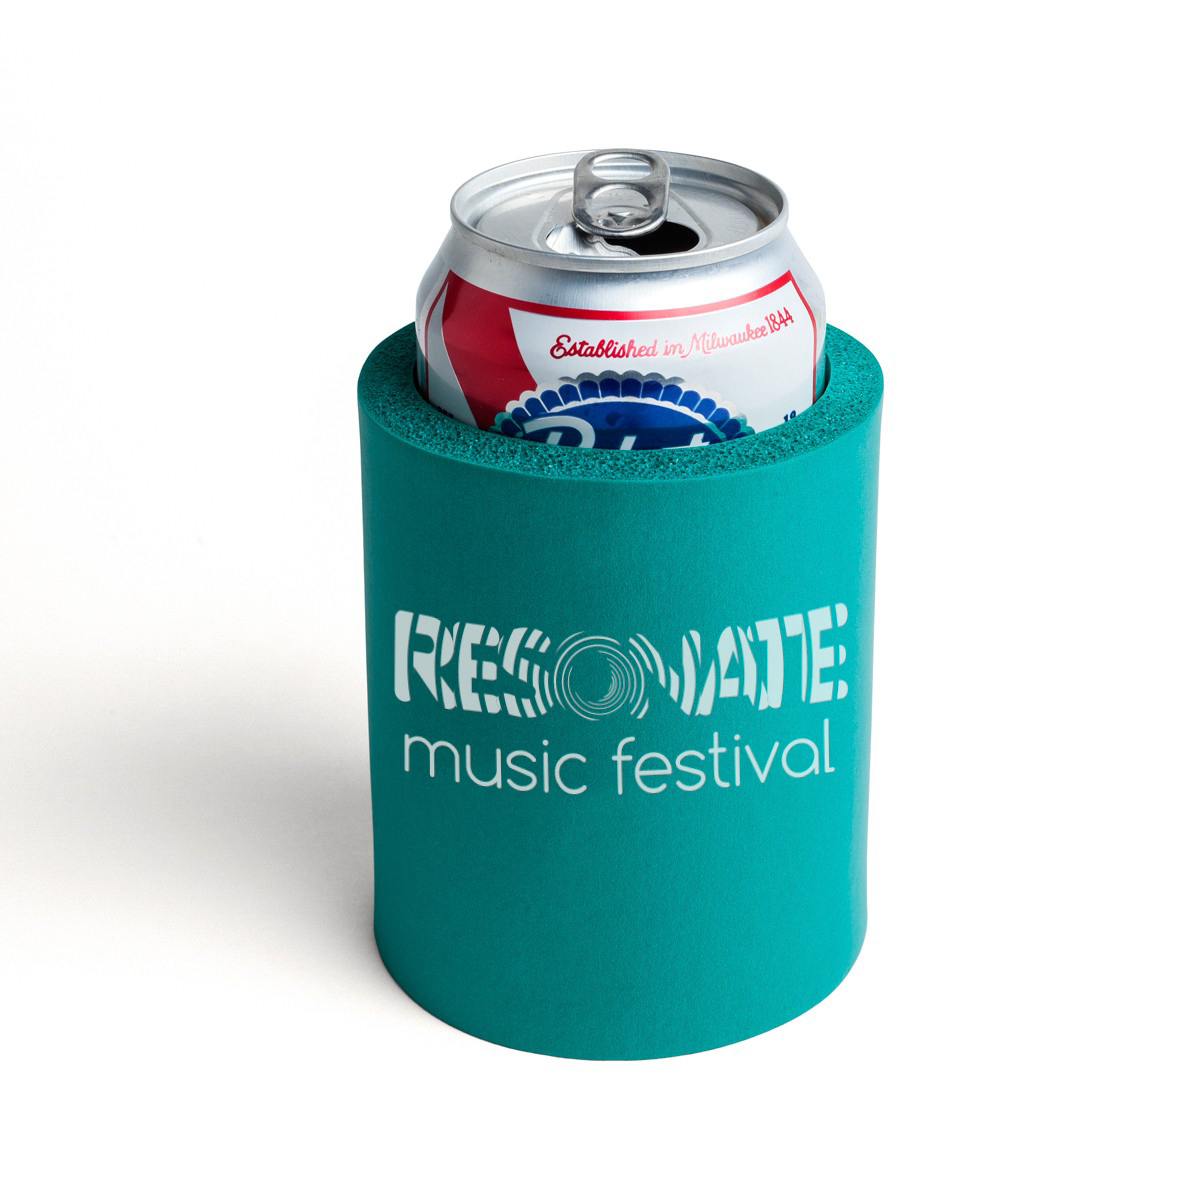 Music Festival Resonate Music Festival Resonate Fest Event Branding festival branding